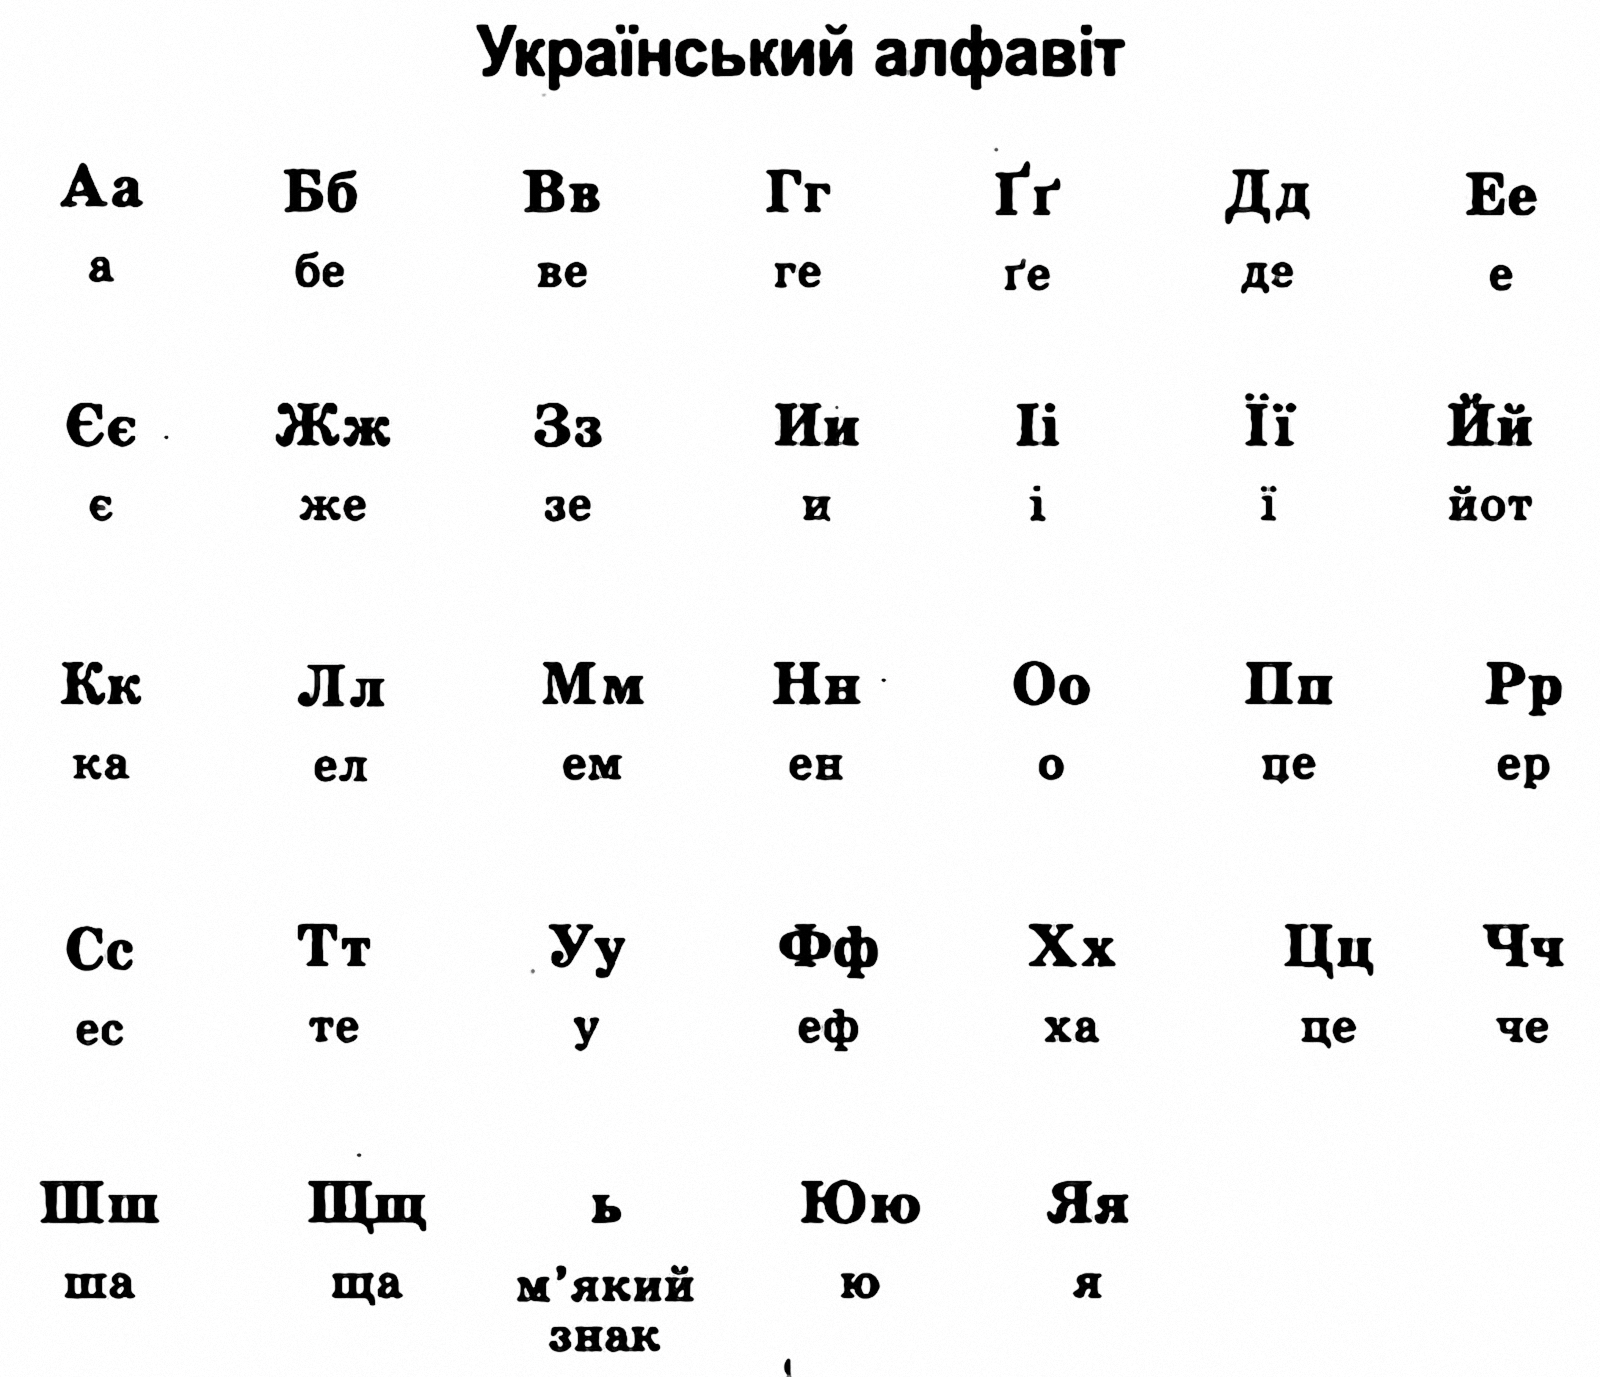 Какая буква украины. Алфавит украинского языка с переводом на русский. Украинский язык алфавит произношение на русском. Украинский алфавит произношение букв. Украинский алфавит с переводом на русский и произношением.